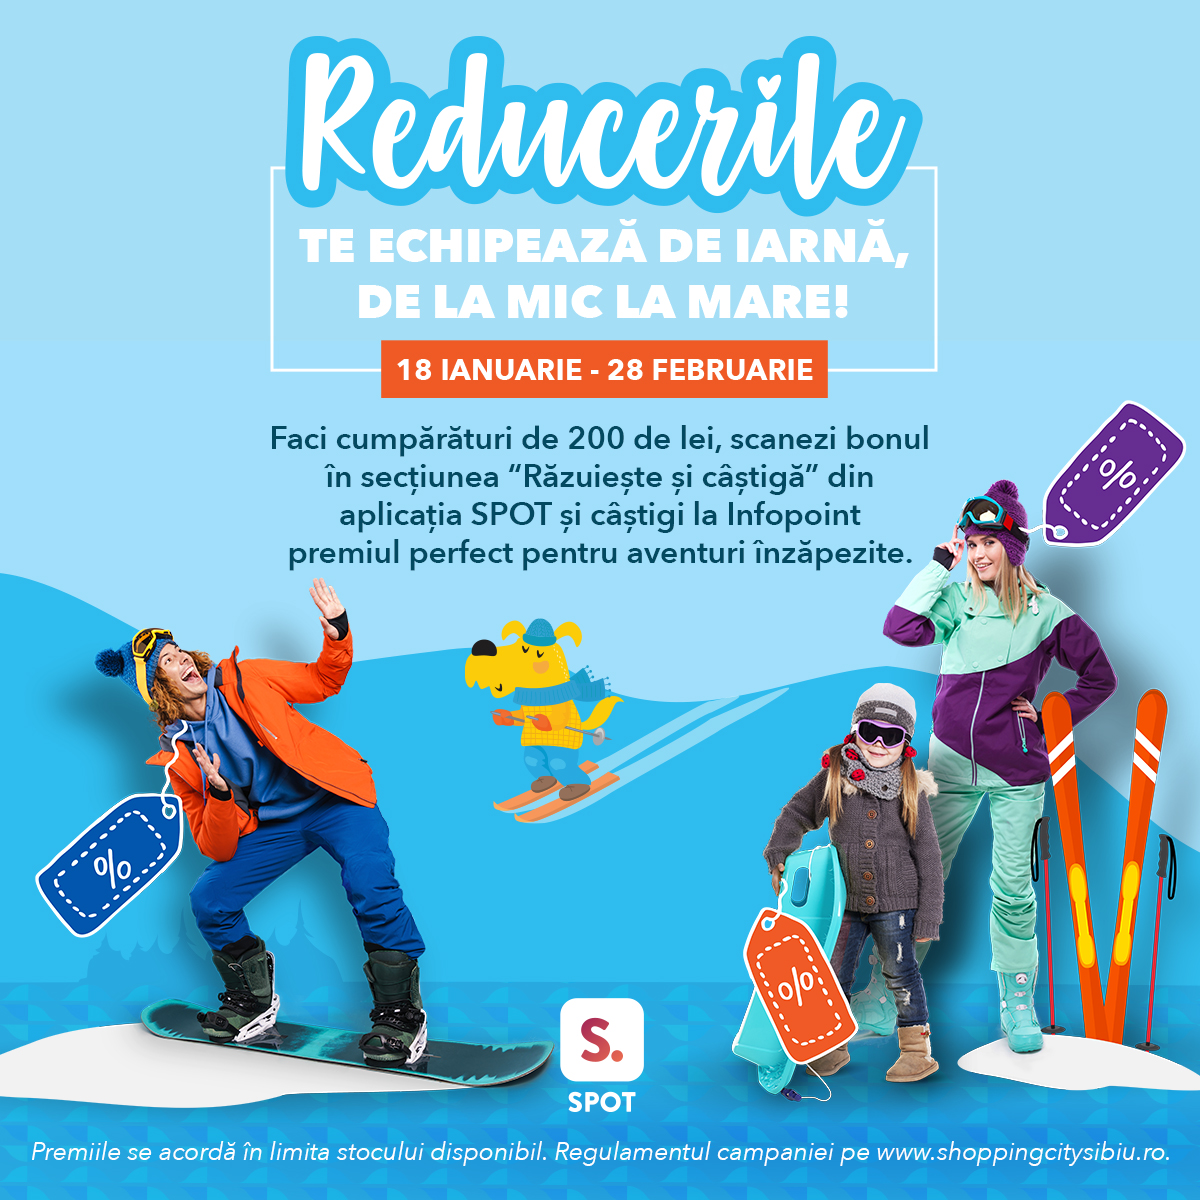 Shopping City Sibiu dă startul reducerilor de iarnă cu 500 de premii instant pentru aventuri în zăpadă